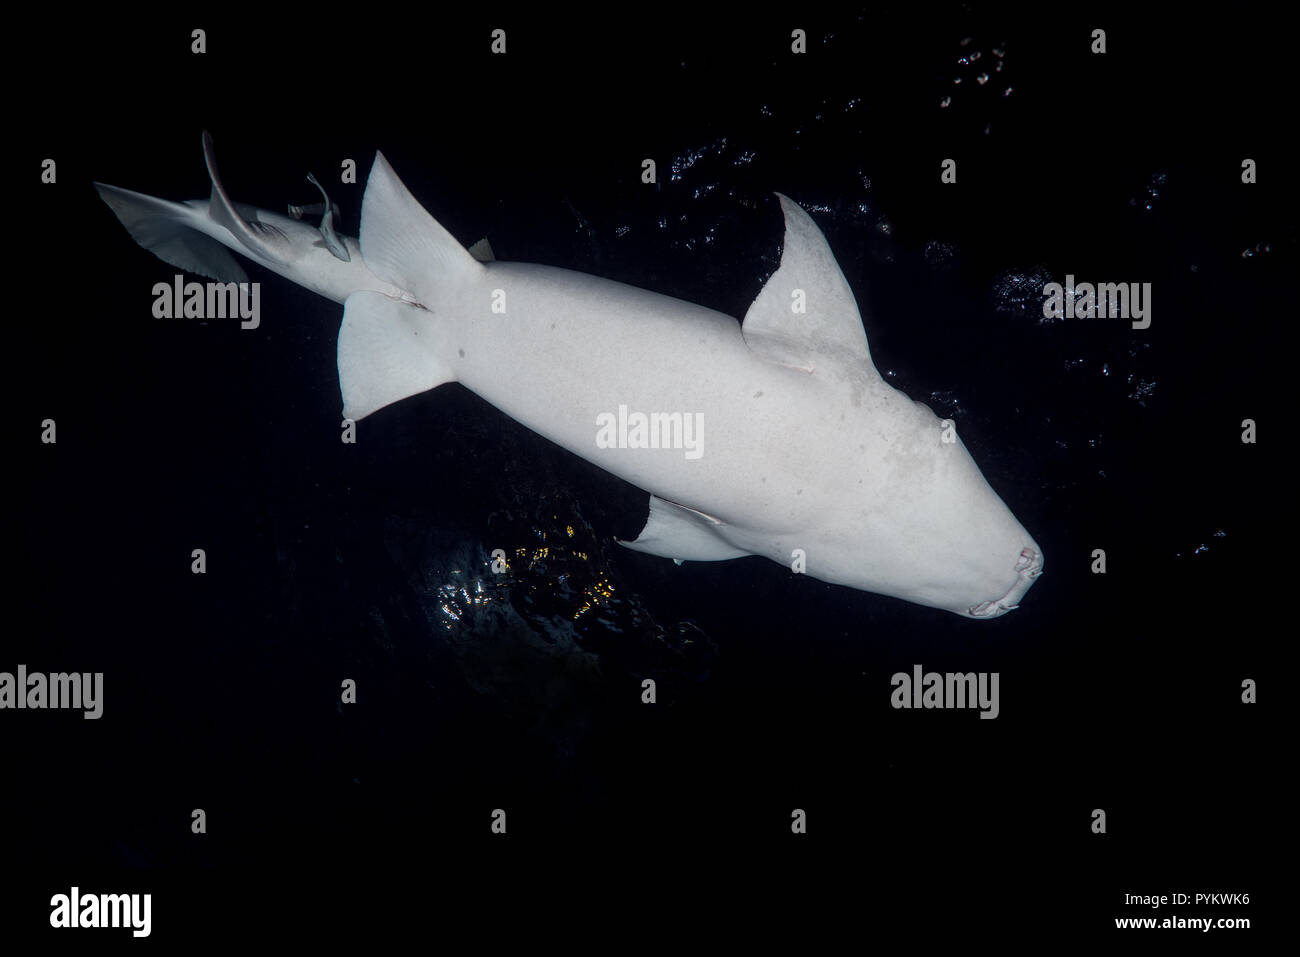 Requins nourrice fauve, Nebrius ferrugineus nager dans la nuit. Tourné à angle faible Banque D'Images